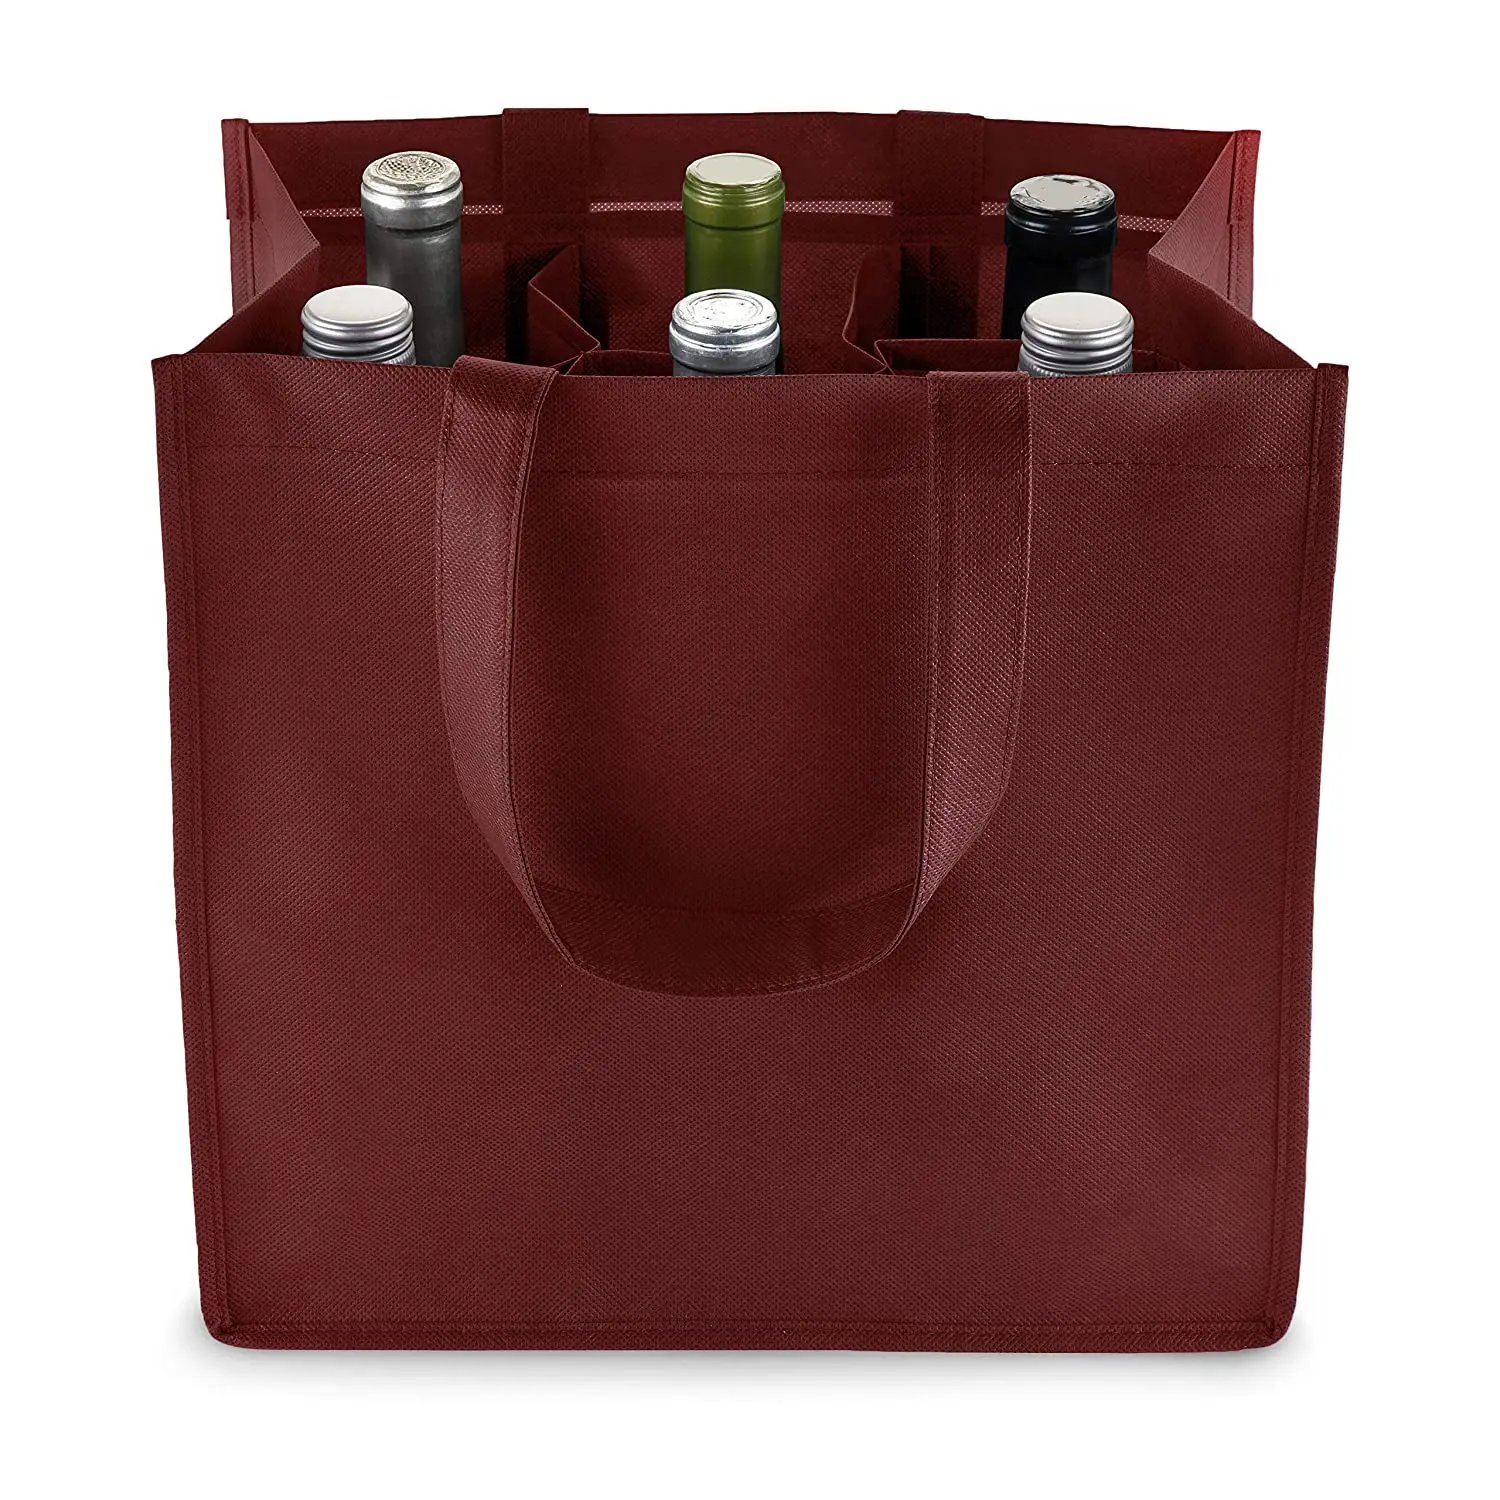 حقيبة حمل زجاجات النبيذ القابلة لإعادة الاستخدام حقيبة سفر النبيذ المحمولة مع مقبض للرحلات والتخييم والتنزهي بحجم مخصص